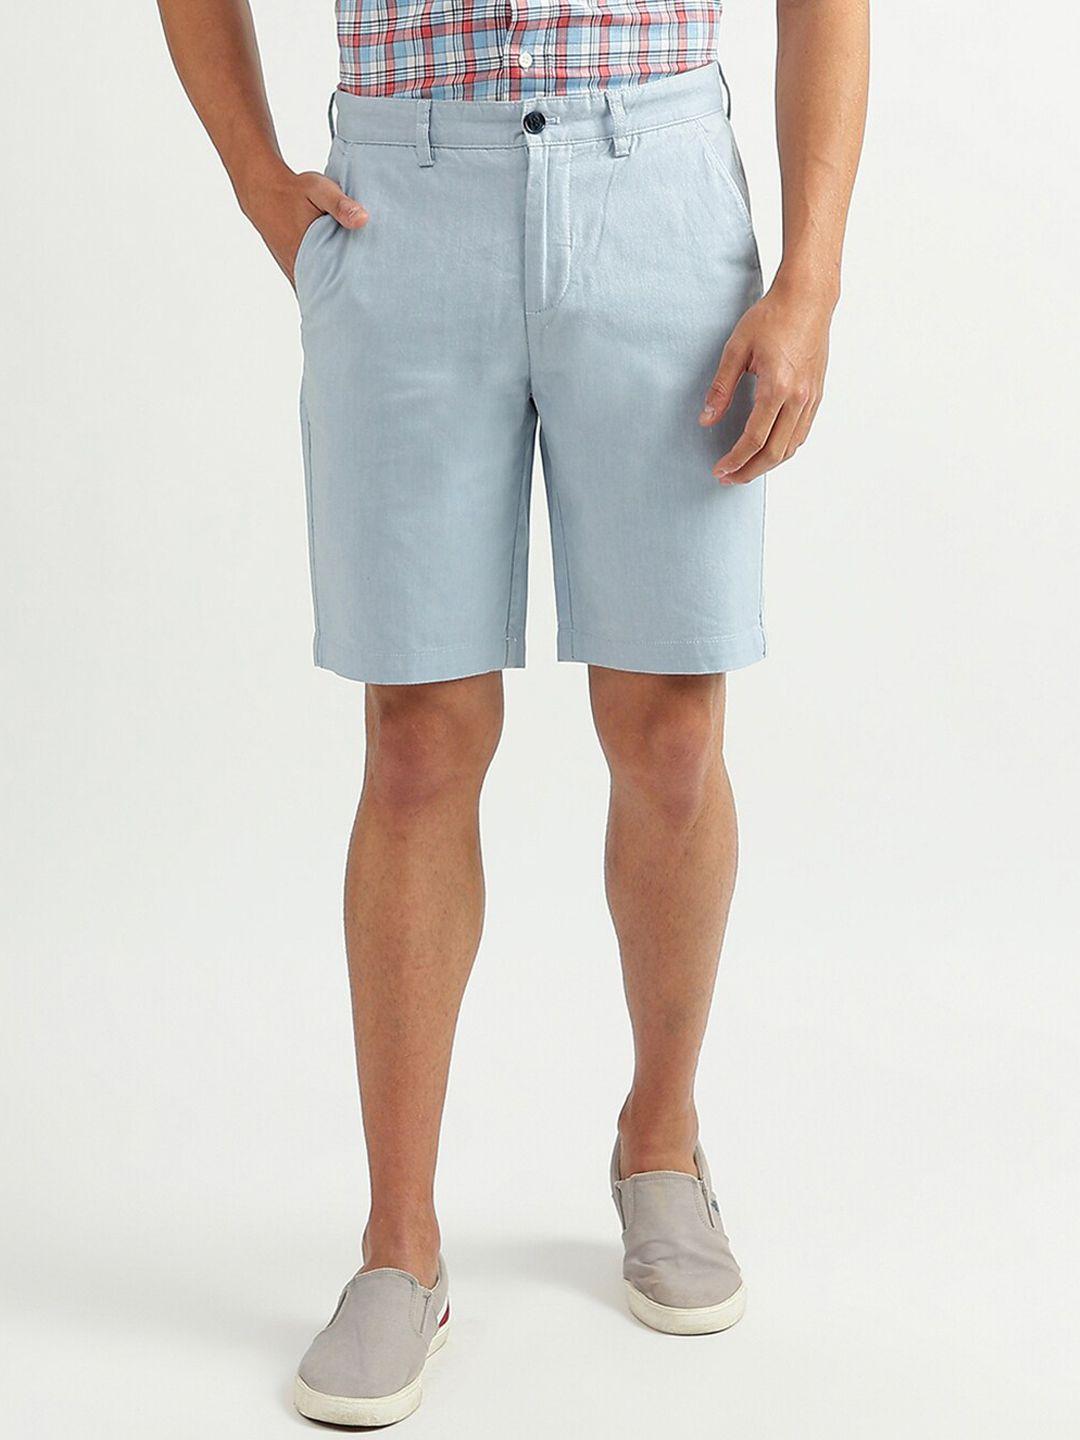 united colors of benetton men cotton slim fit shorts